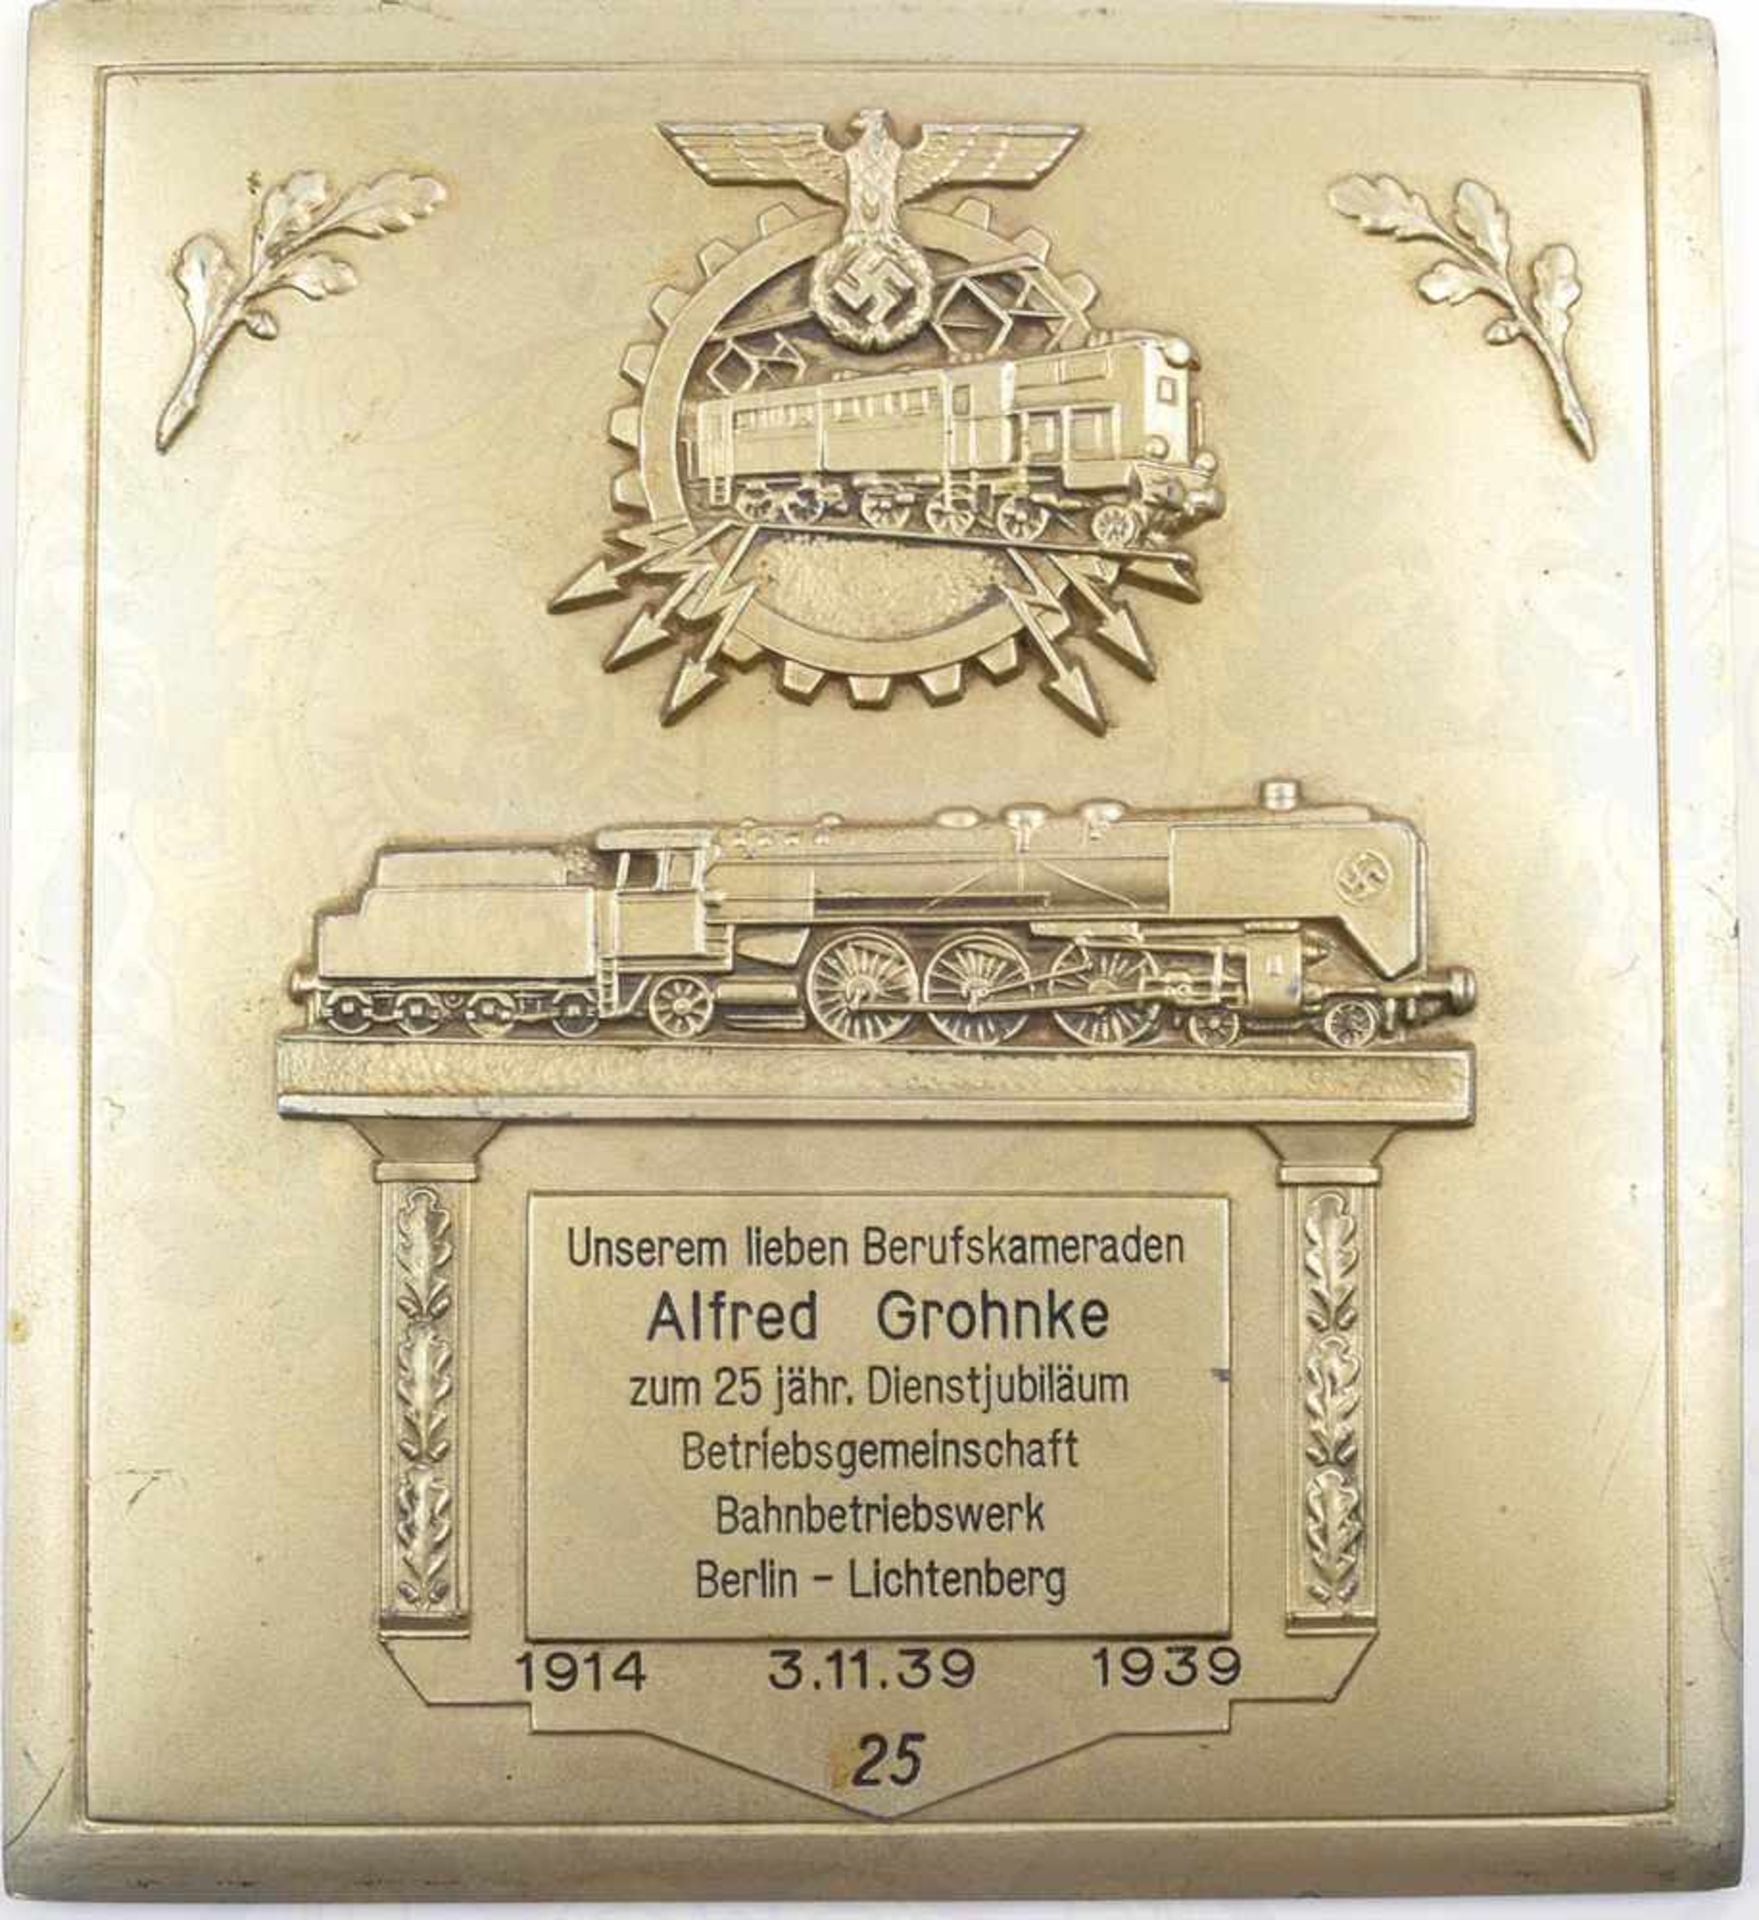 WANDRELIEF BAHNBETRIEBSWERK BERLIN-LICHTENBERG, Zinn/versilbert, m. Lokomotiven, Hoheitsadler u.